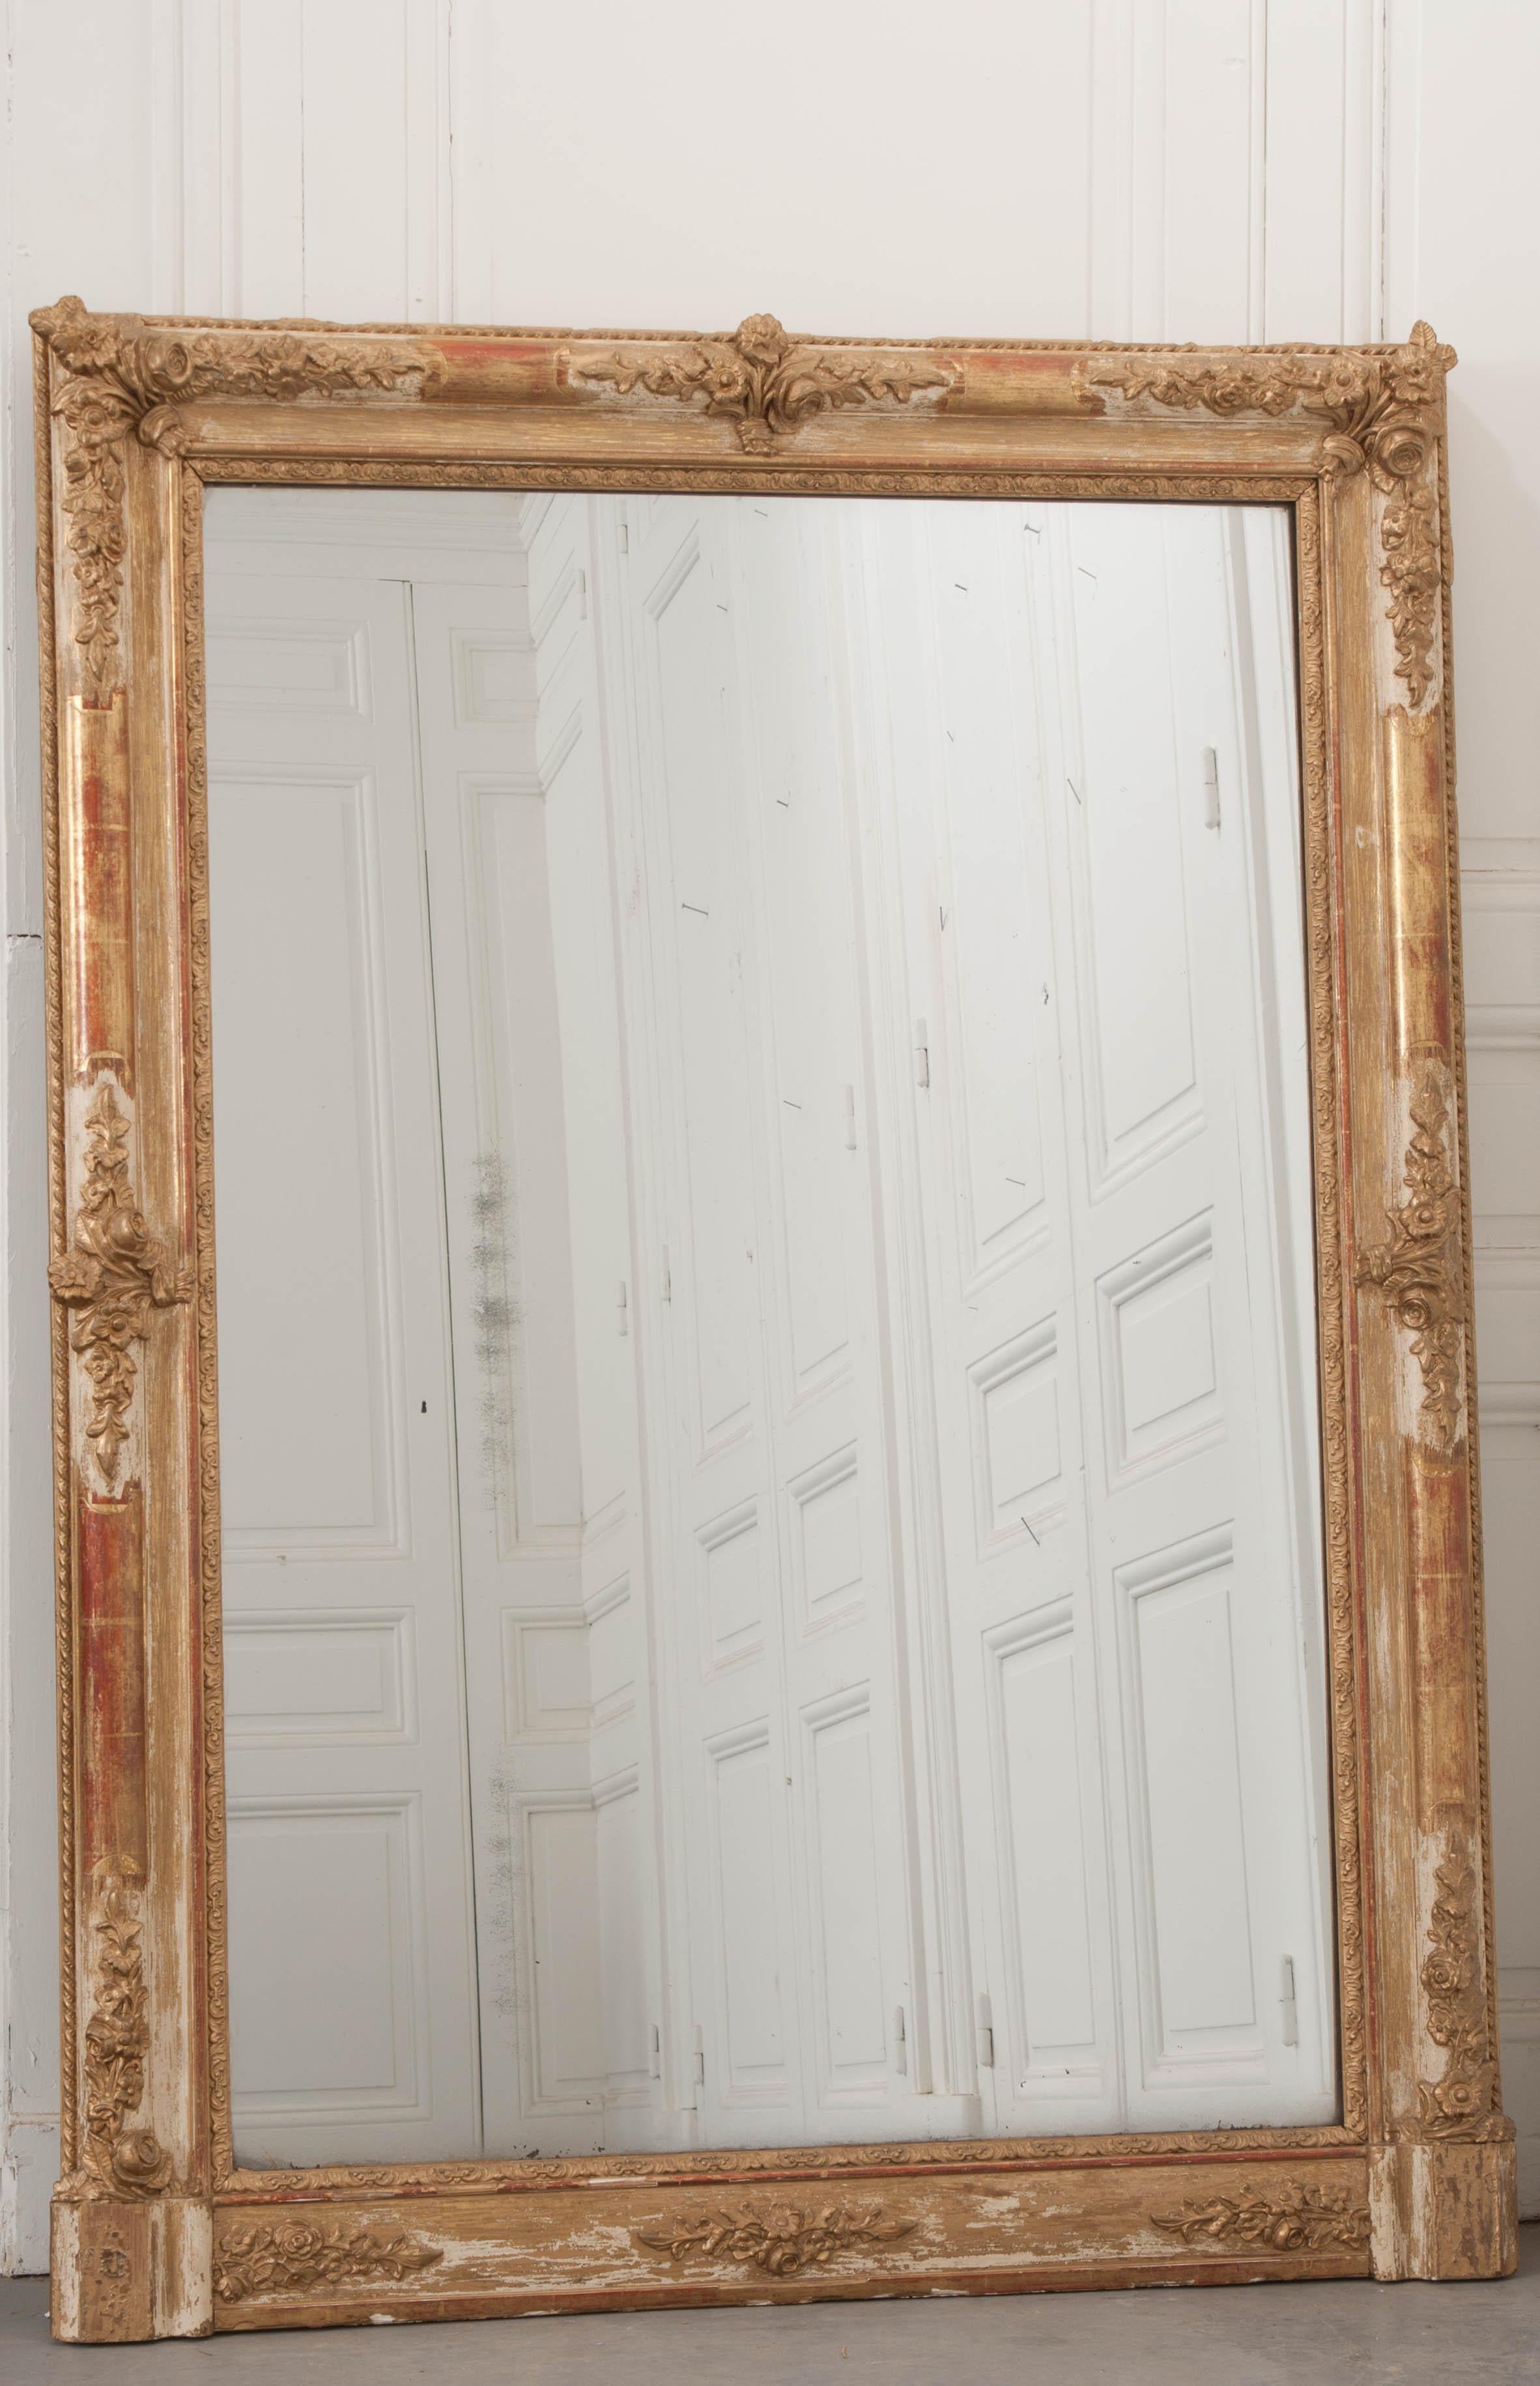 Ein brillanter Übermantelspiegel aus vergoldetem Holz aus dem 19. Jahrhundert, hergestellt in Frankreich um 1870. Der Spiegel ist groß und schön. Der Rahmen ist mit Blumenbündeln verziert, die sich in den Ecken und an den Seiten befinden. Die